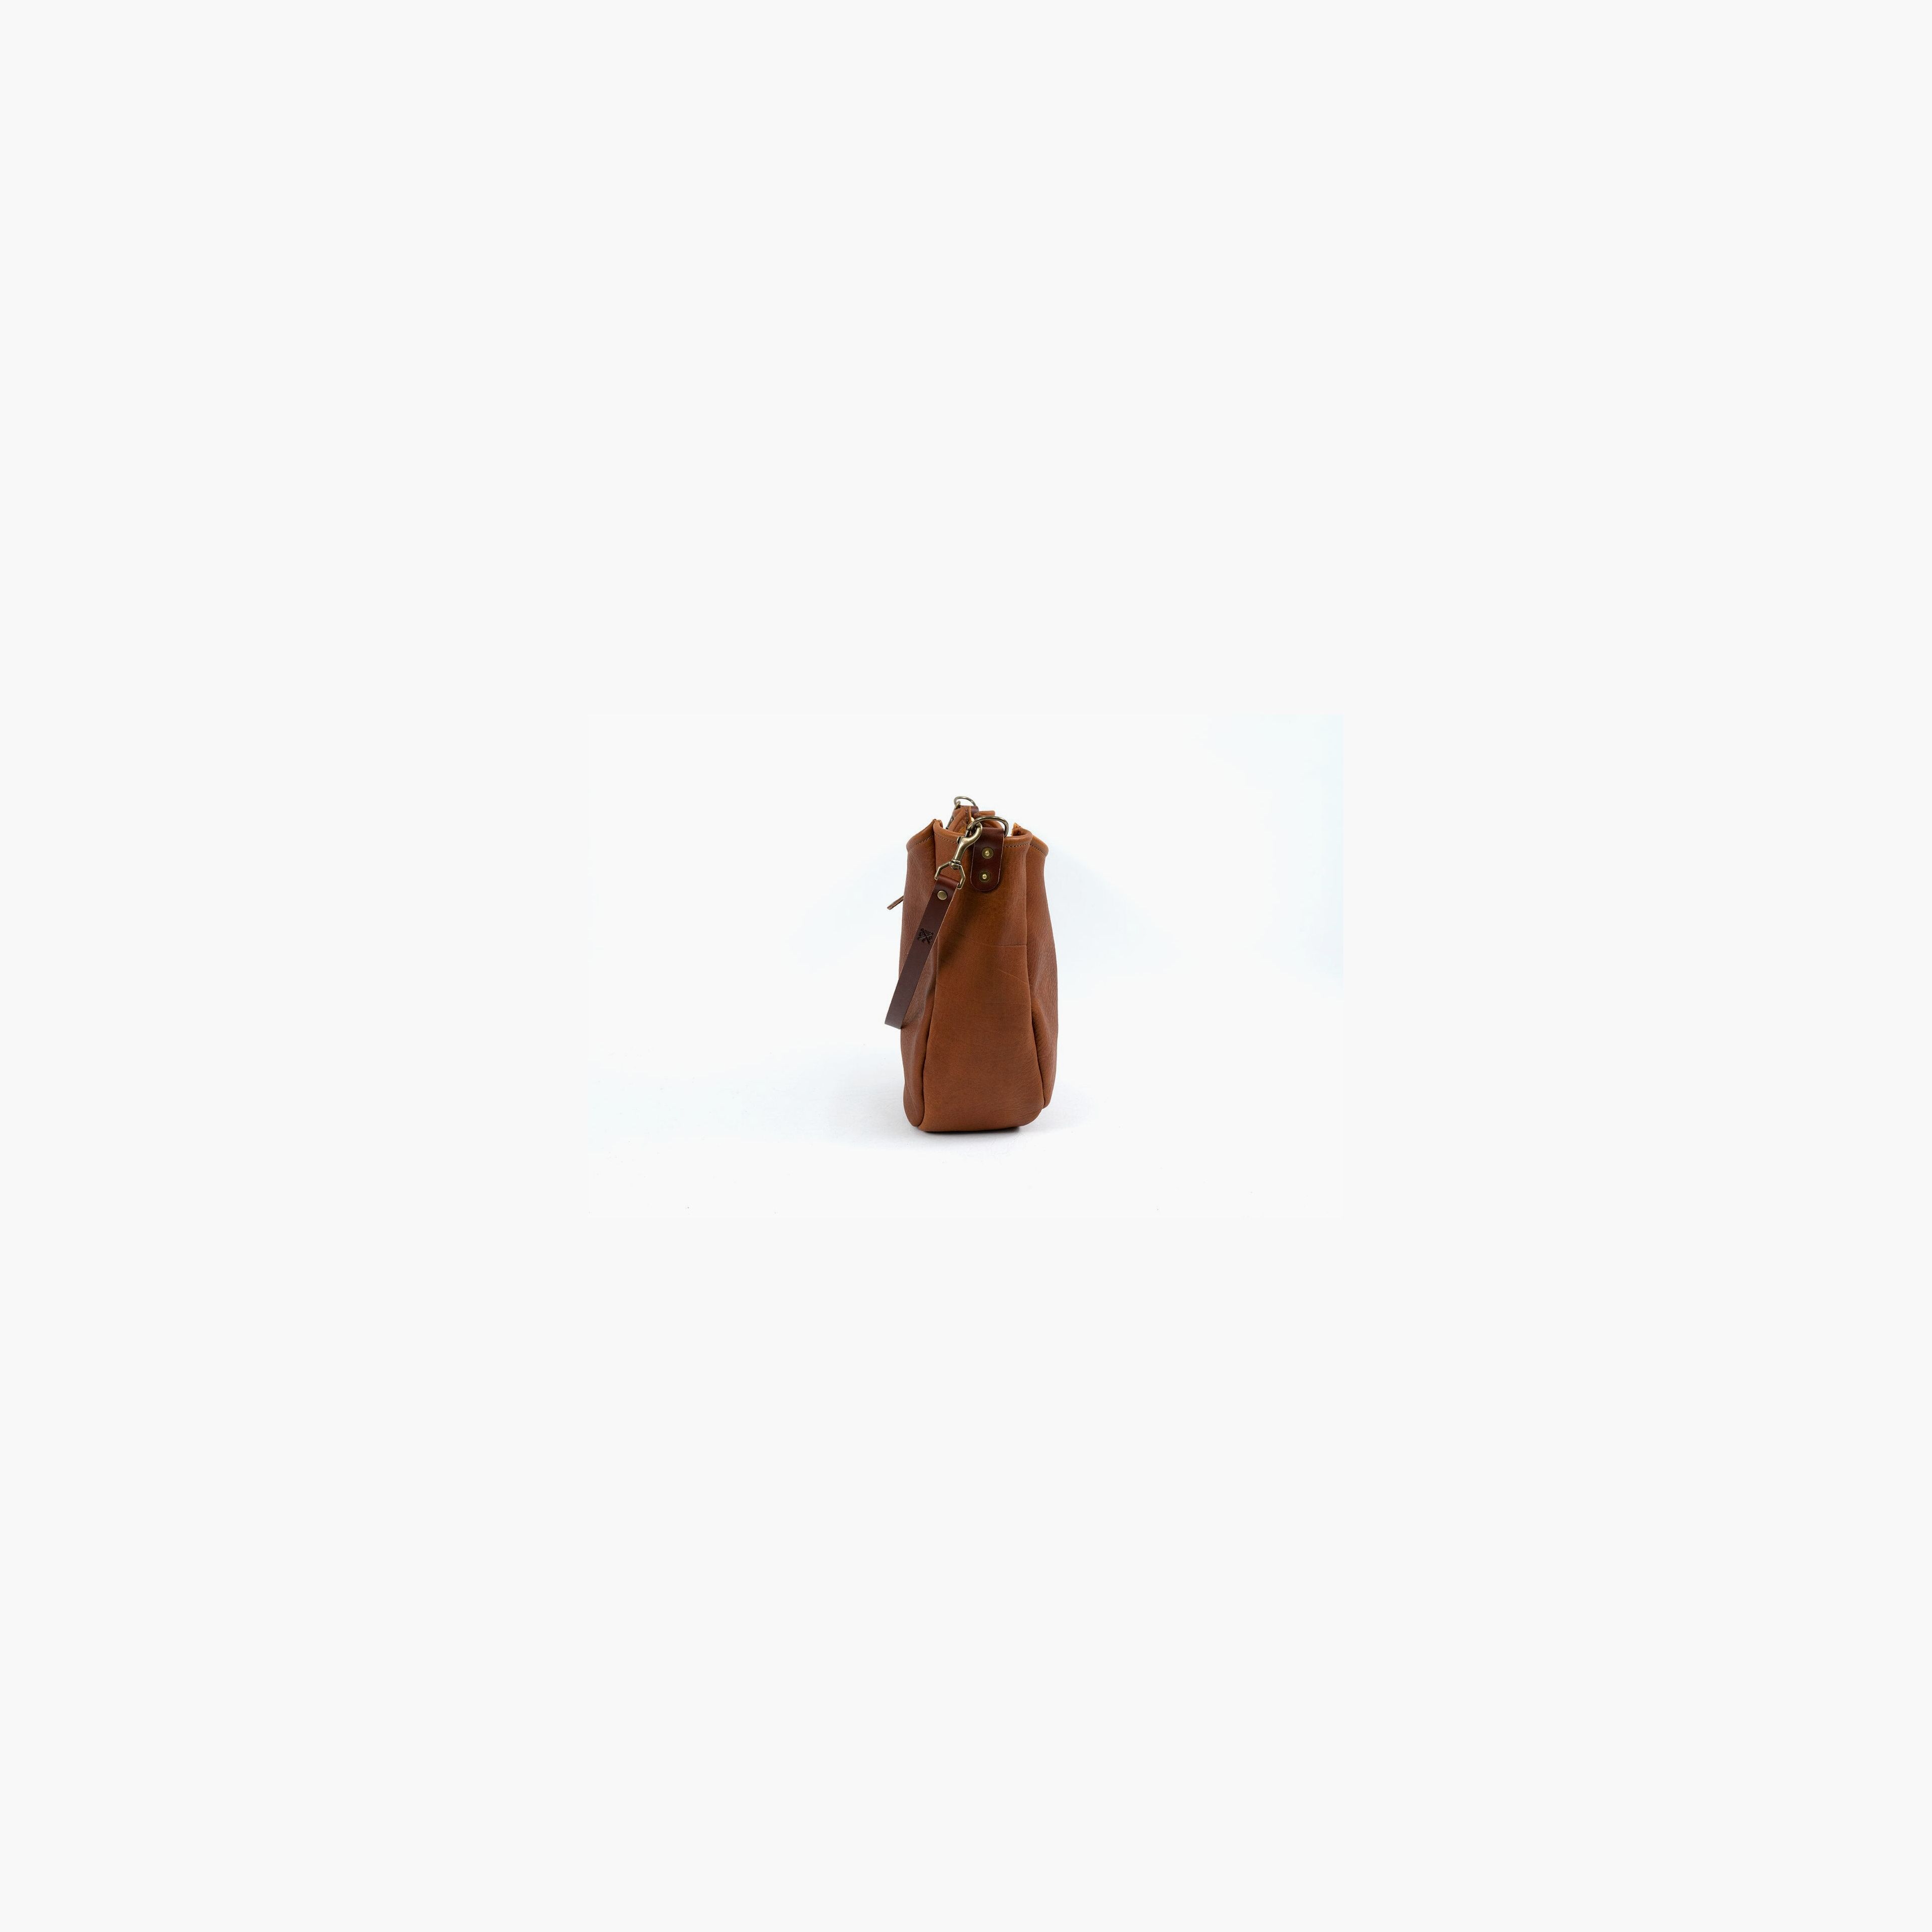 Celeste Leather Hobo Bag - Large - Black